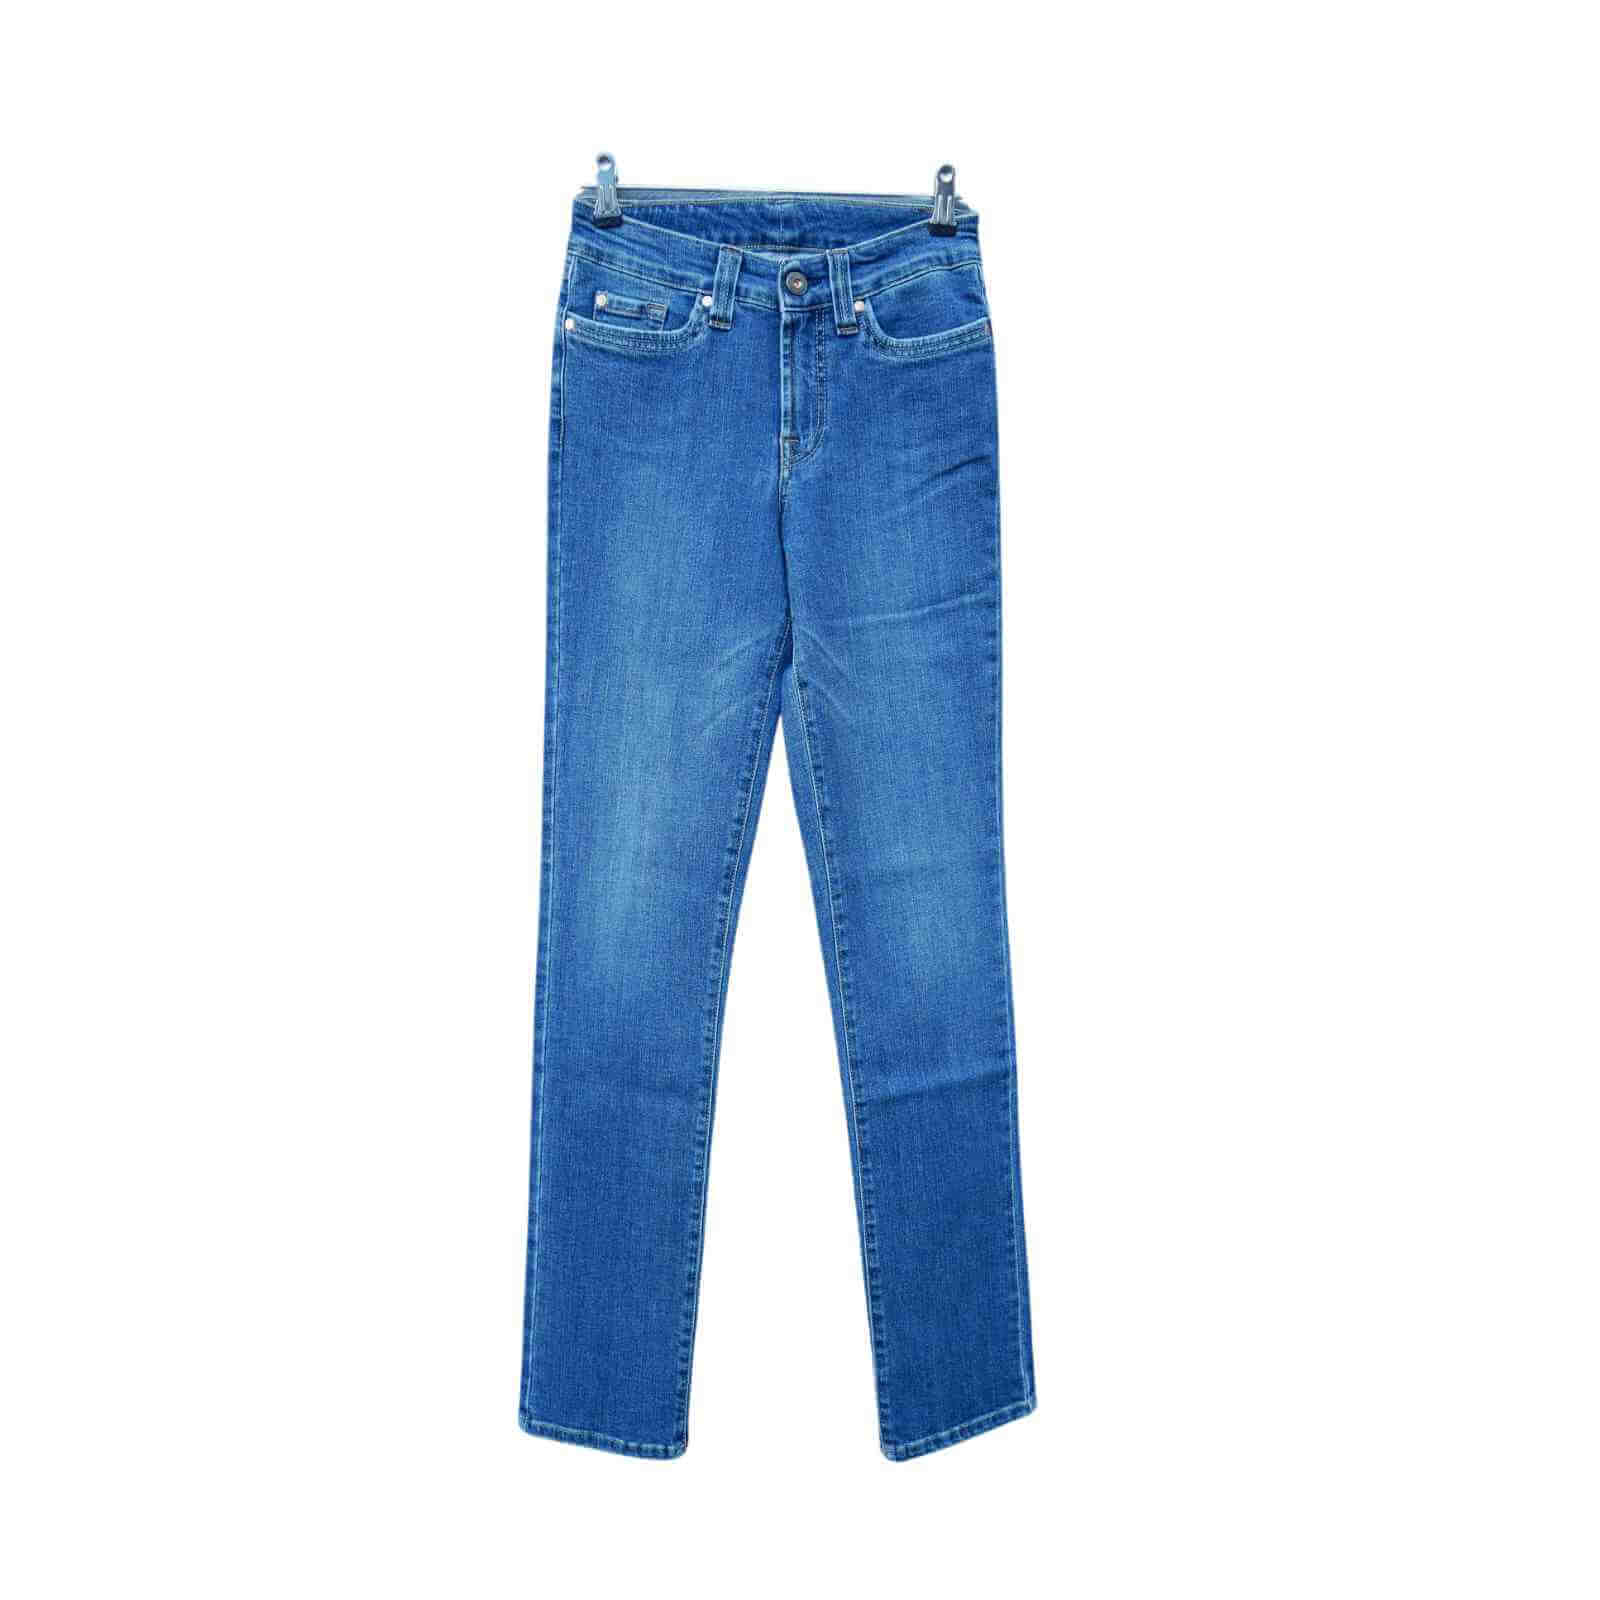 Klassiske Jonny Q jeans i model 682 old vintage blå